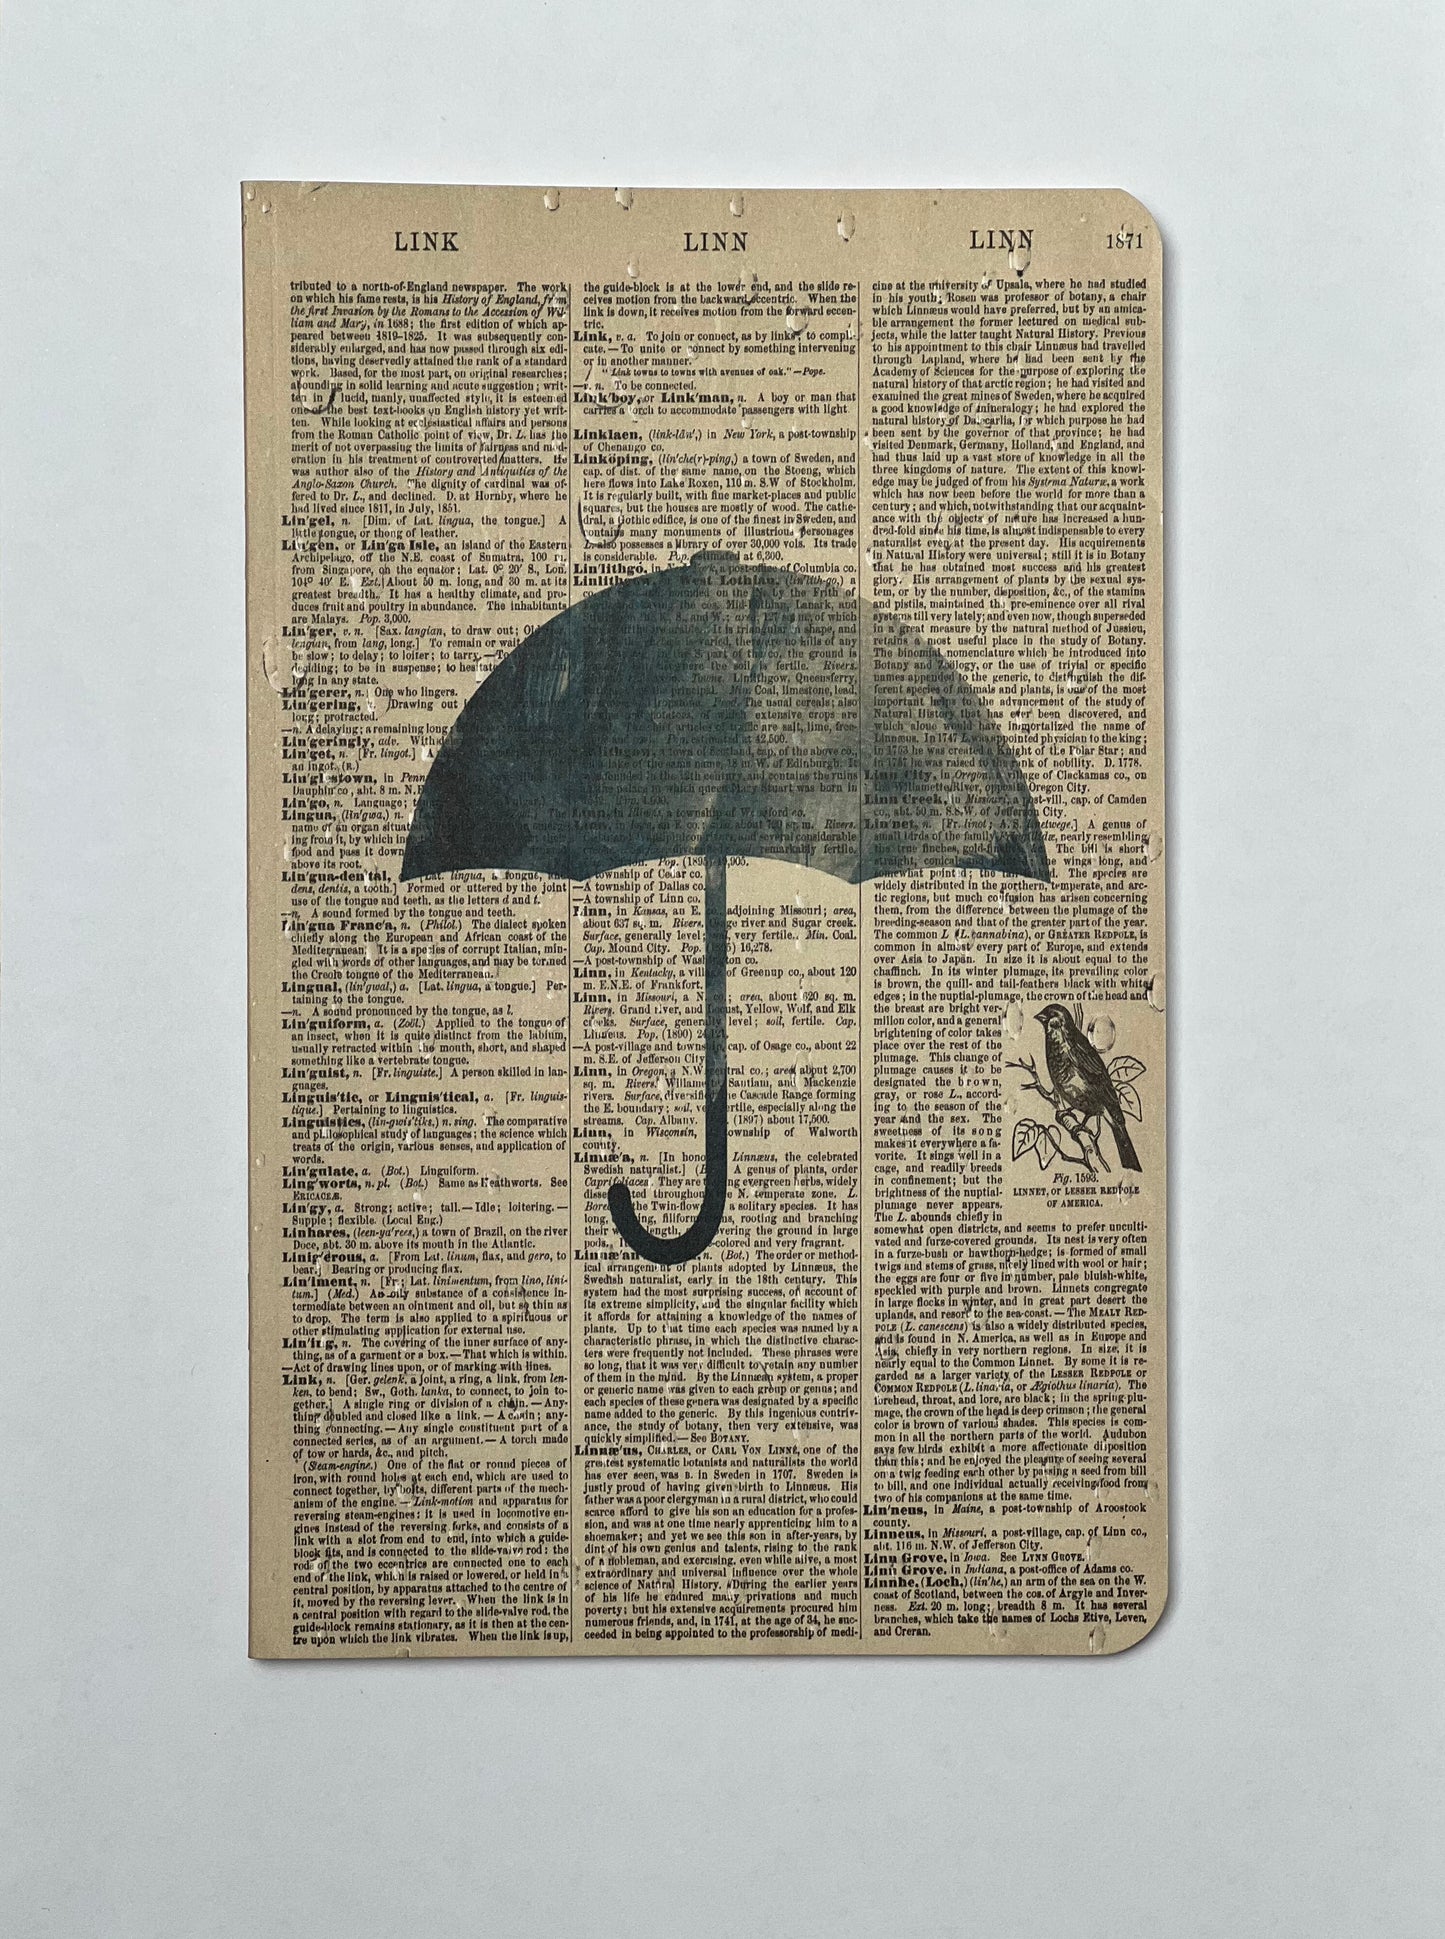 Umbrella Dictionary Art Notebook (WAN23402)